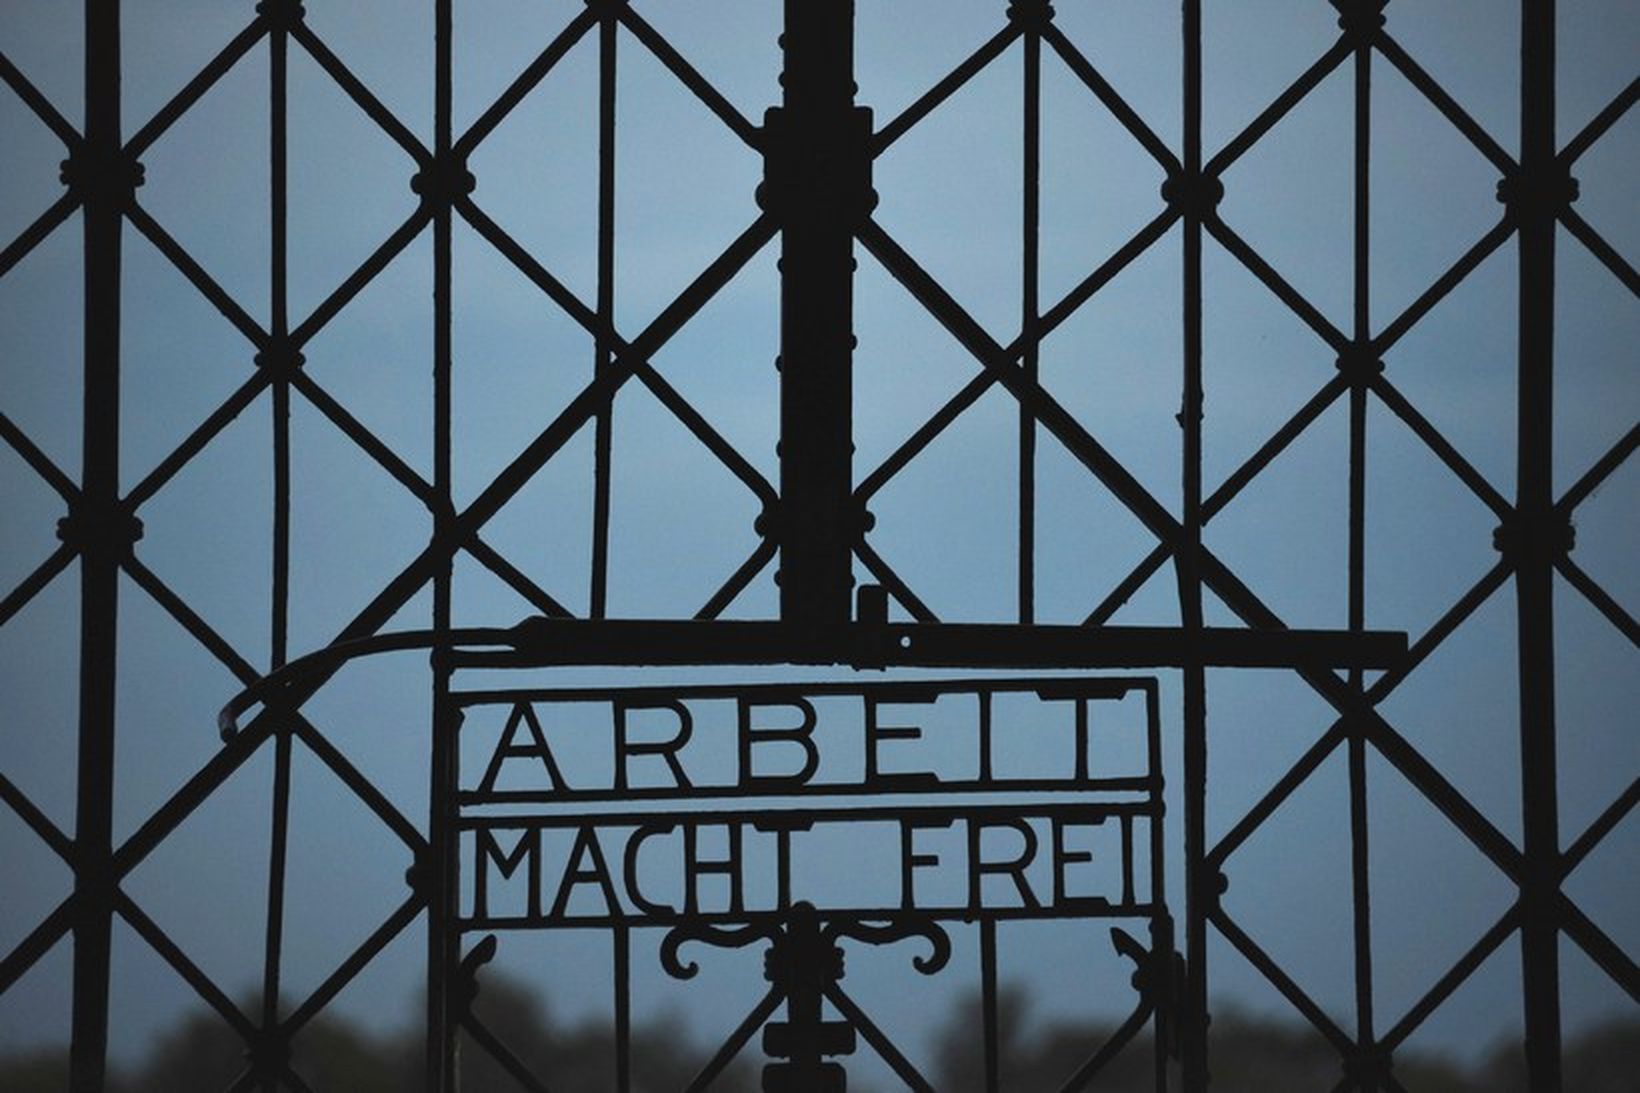 Járnhliðið sem var stolið úr Dachau í nótt Arbeit macht …